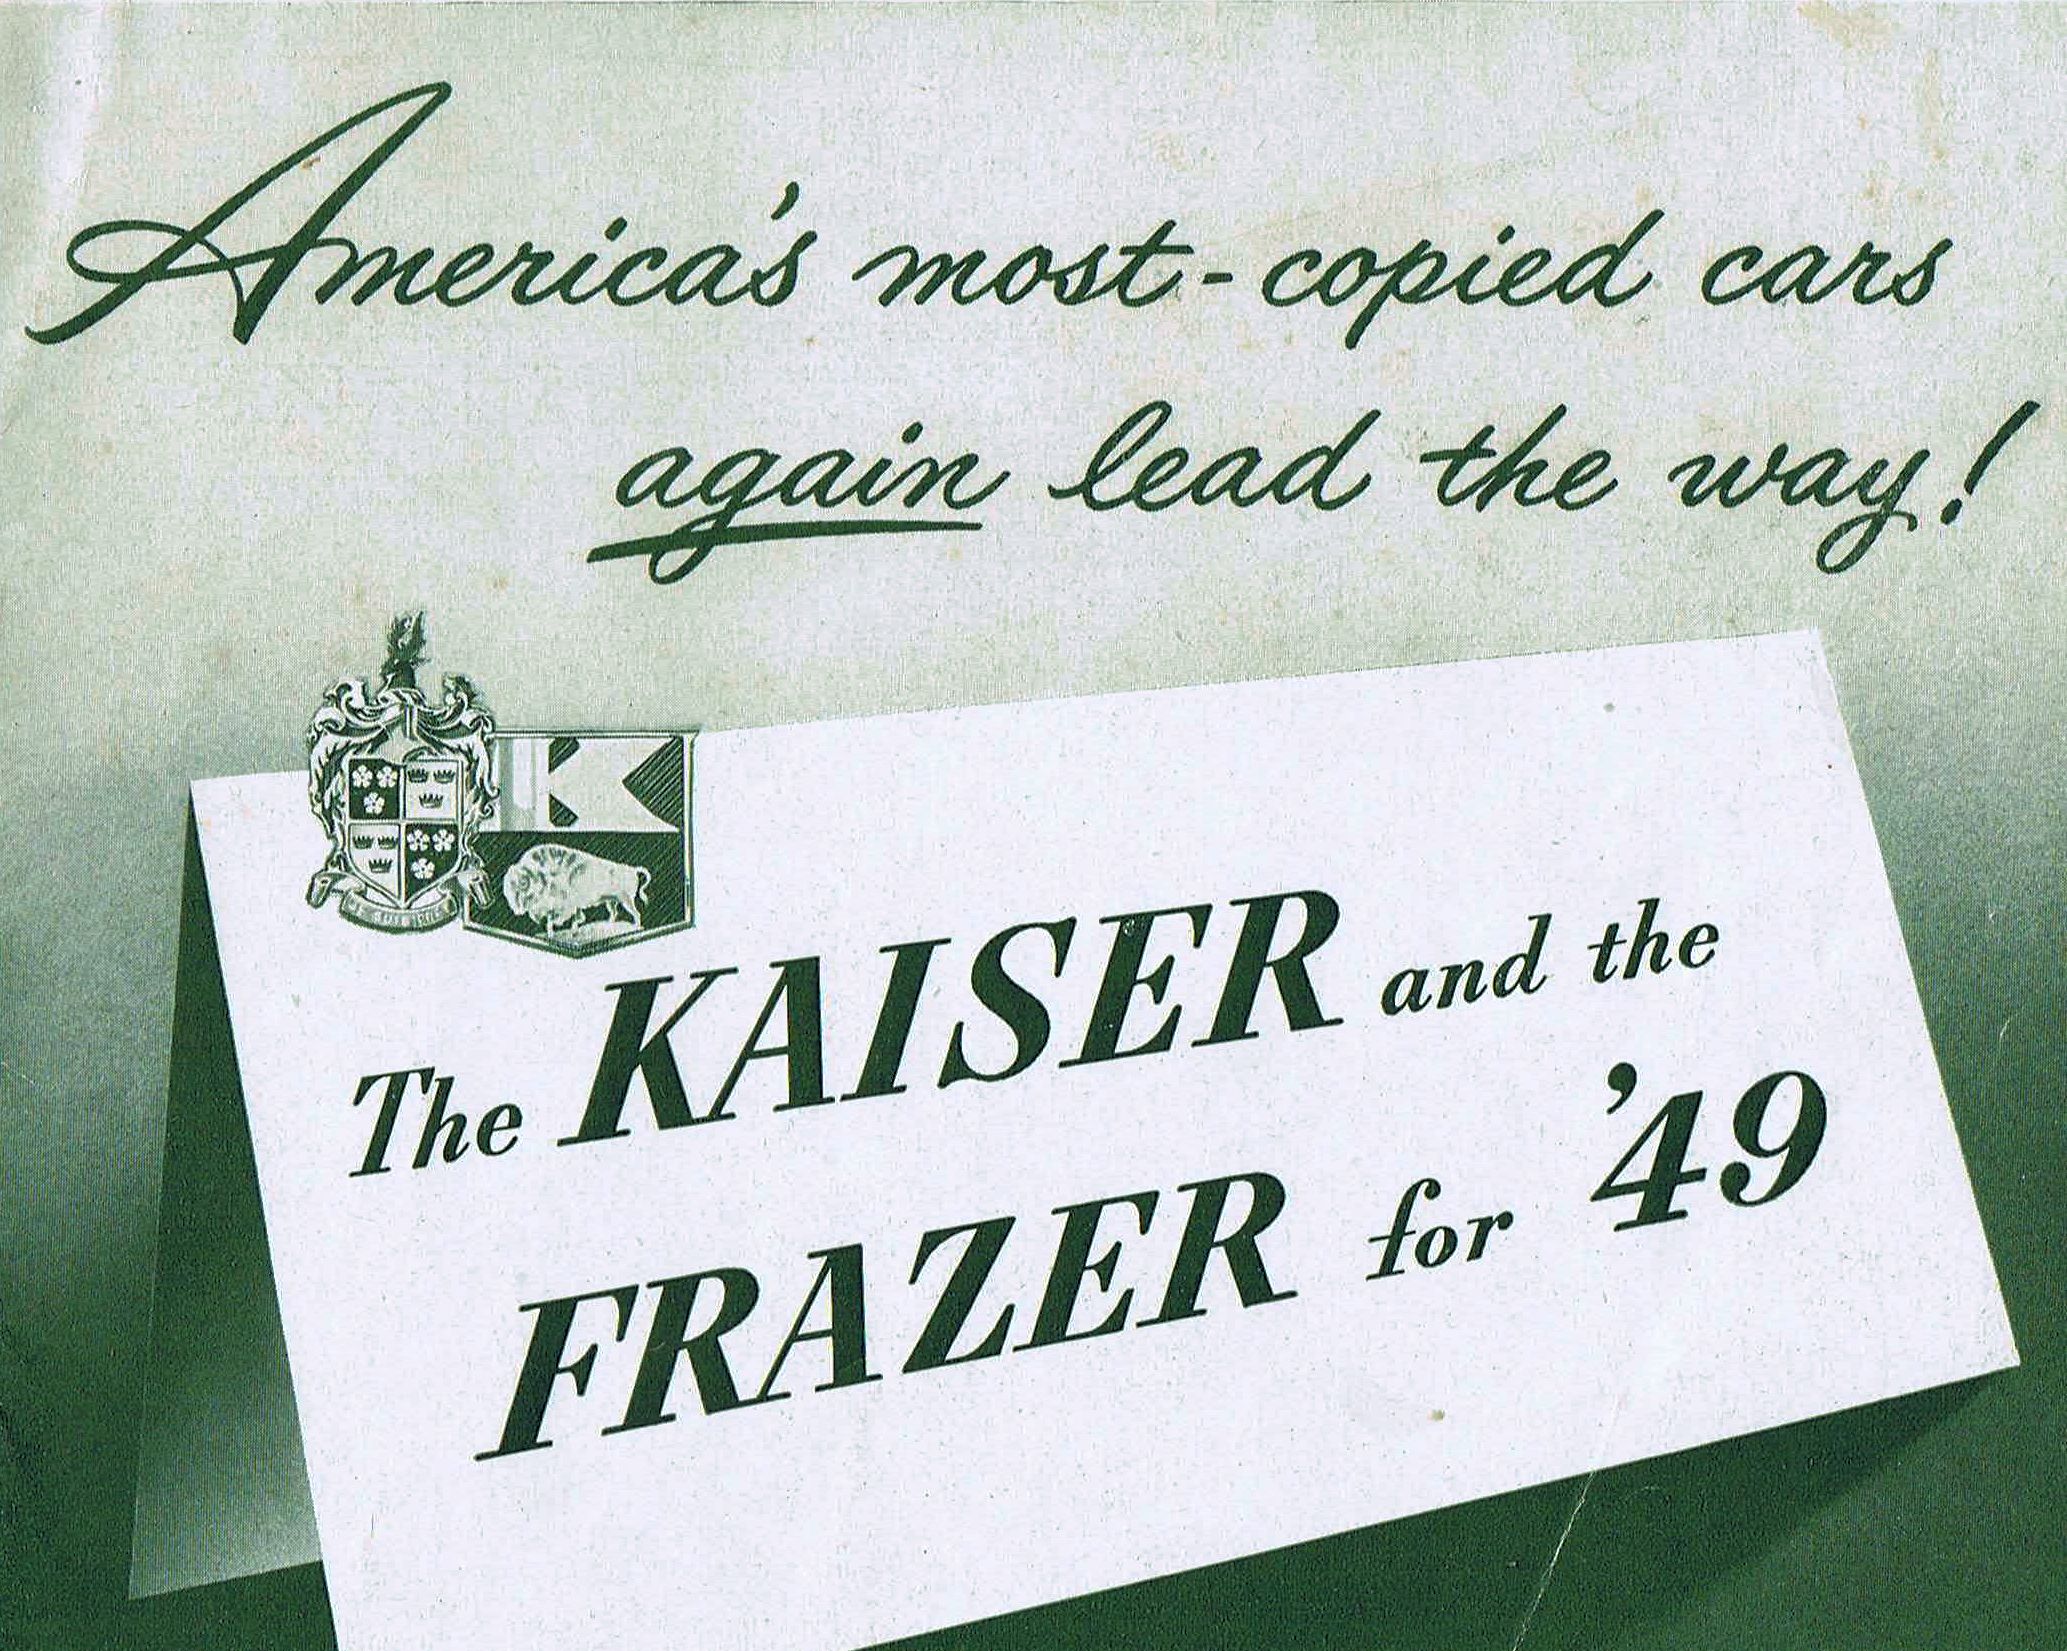 1949_Kaiser-Frazer-01